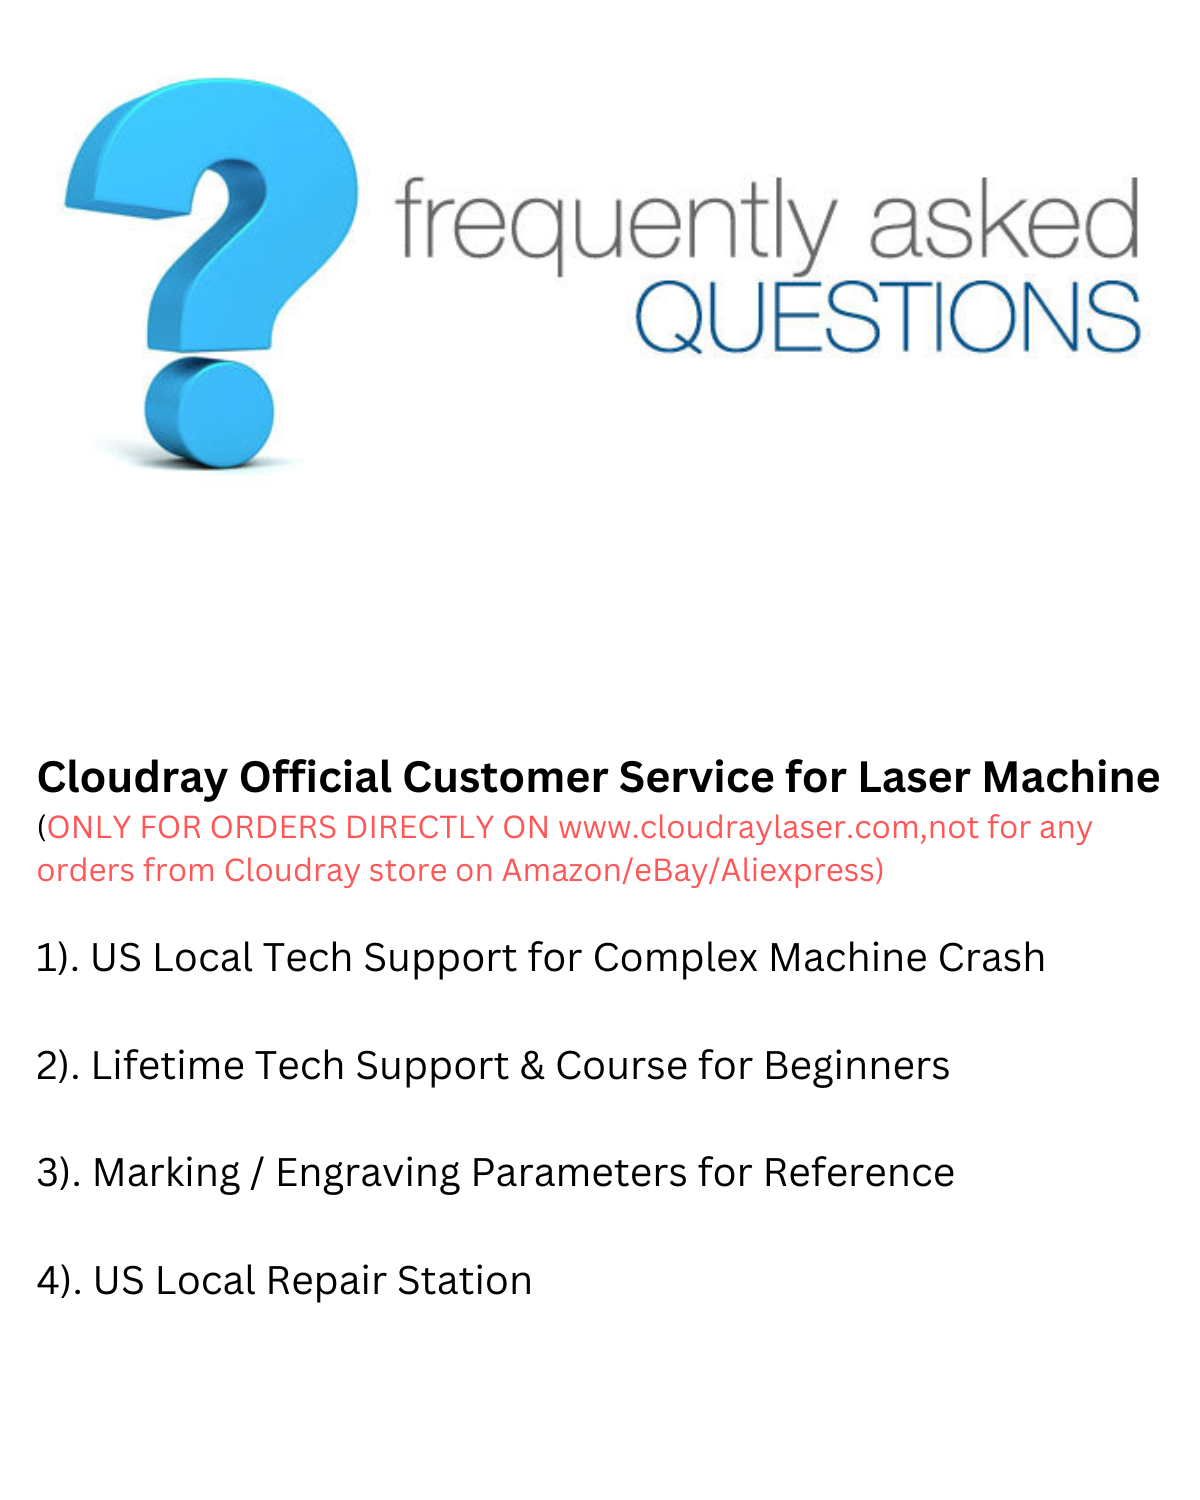 laser tech services